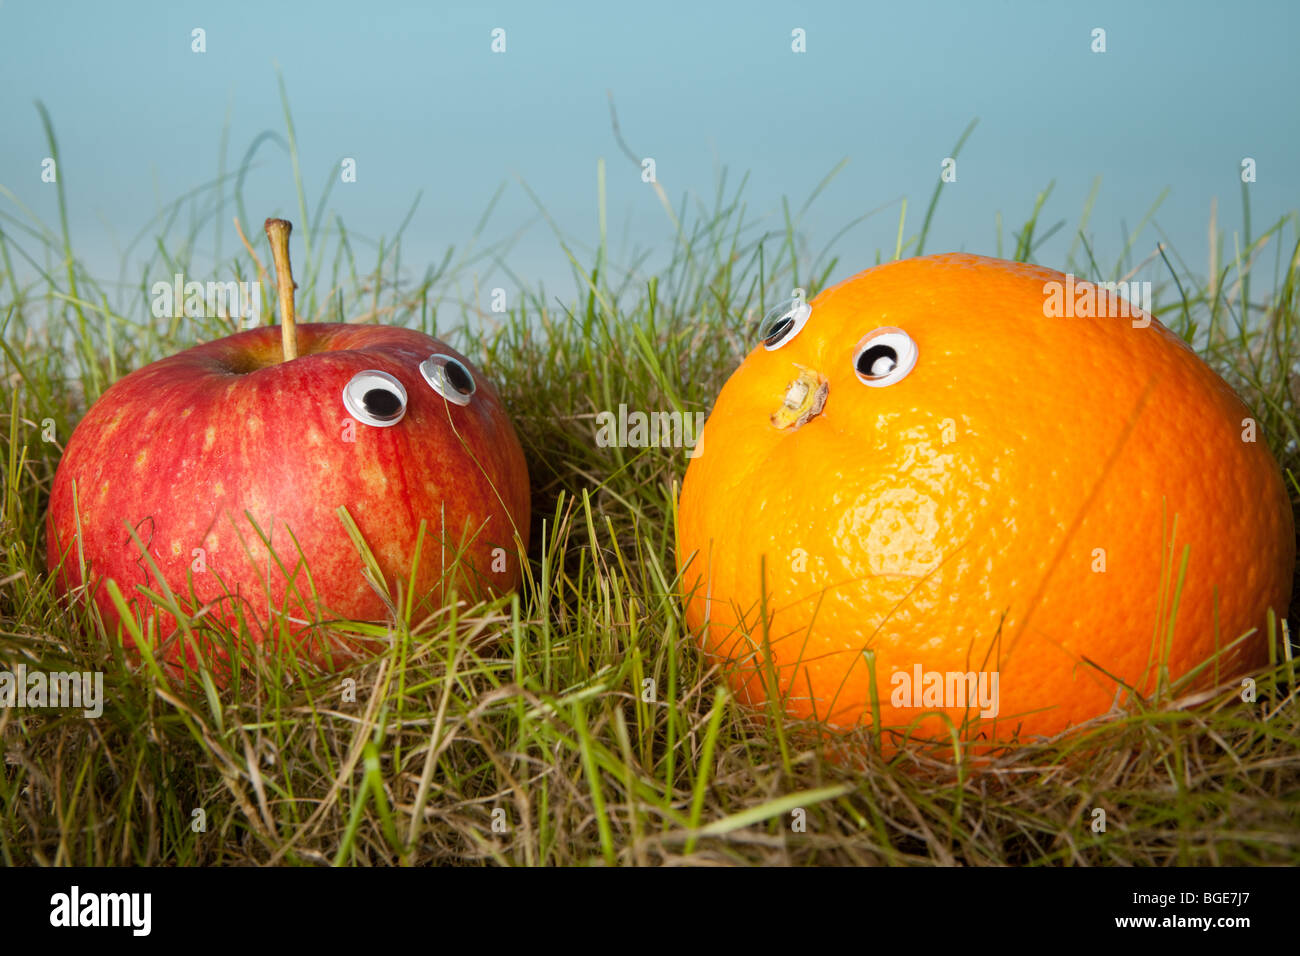 Apple et d'orange avec Smiley yeux in Green grass Banque D'Images